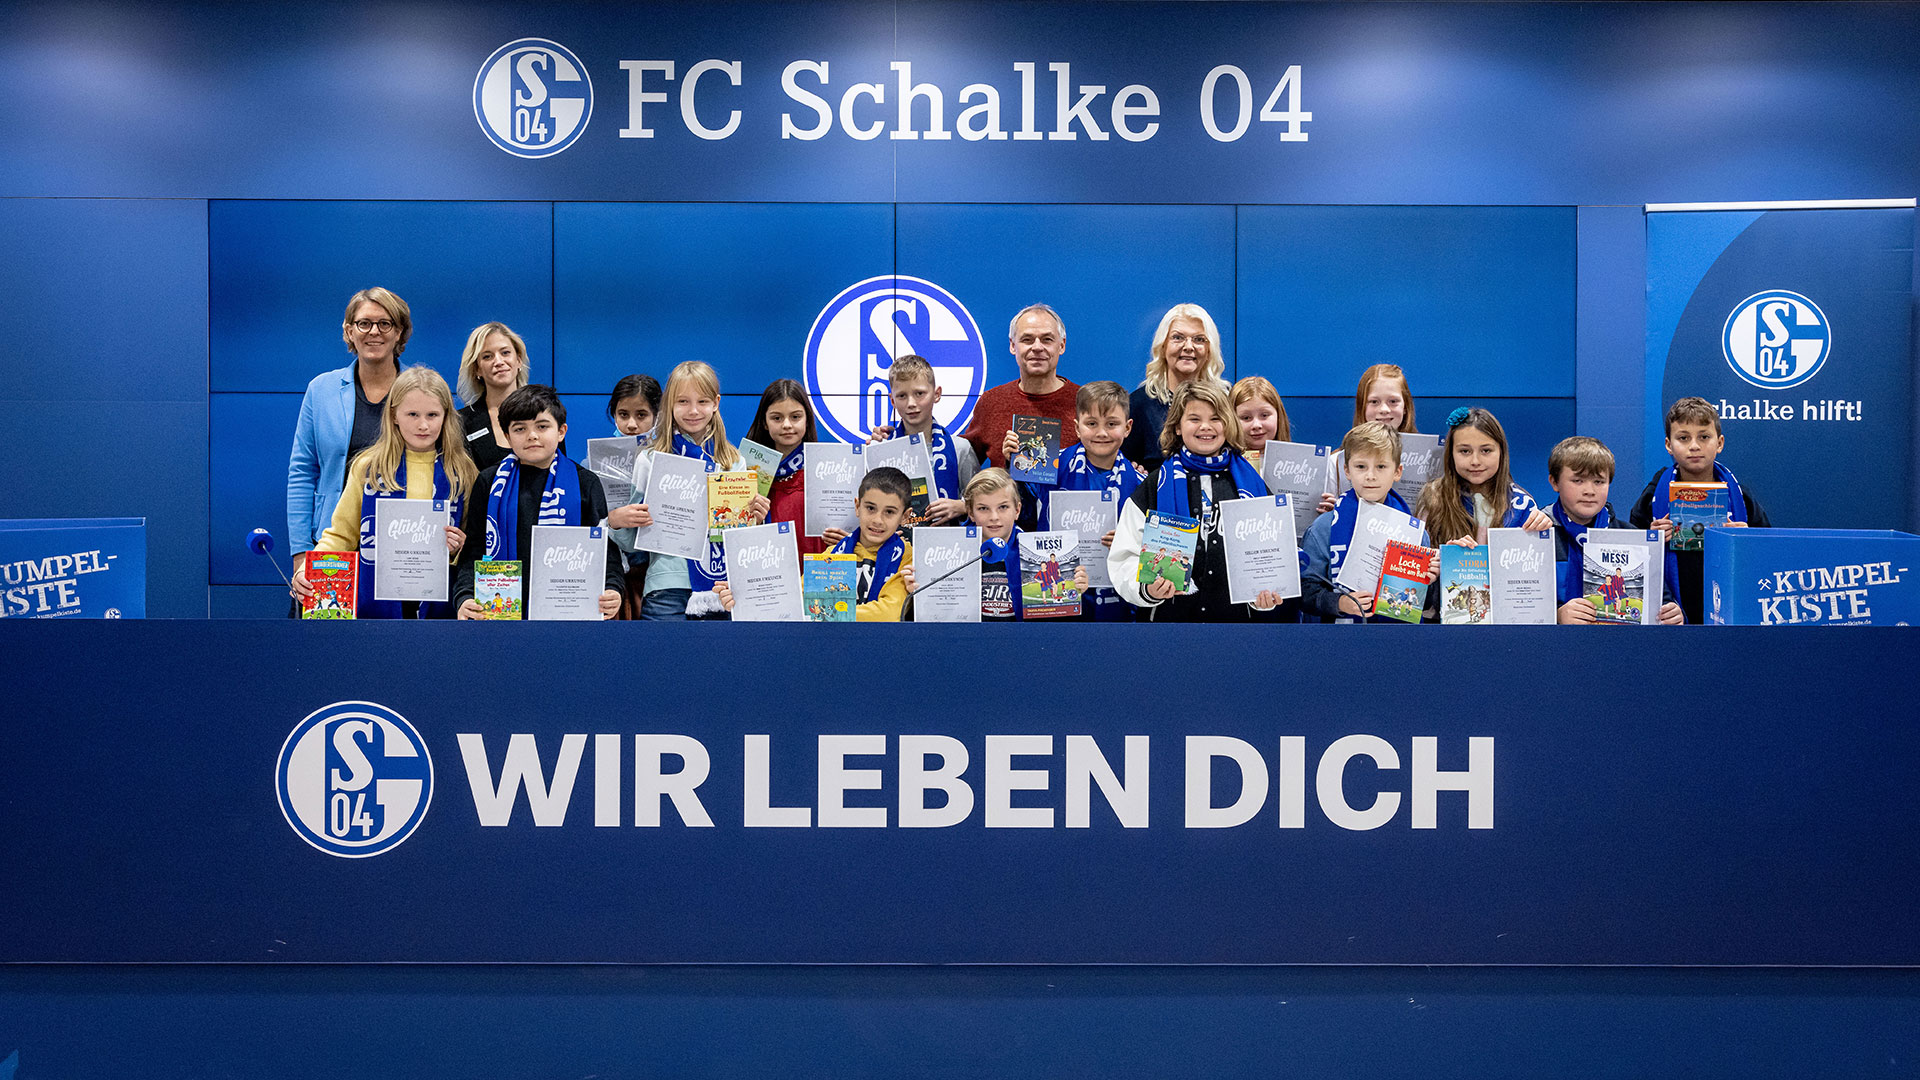 Vorlesewettbewerb auf Schalke